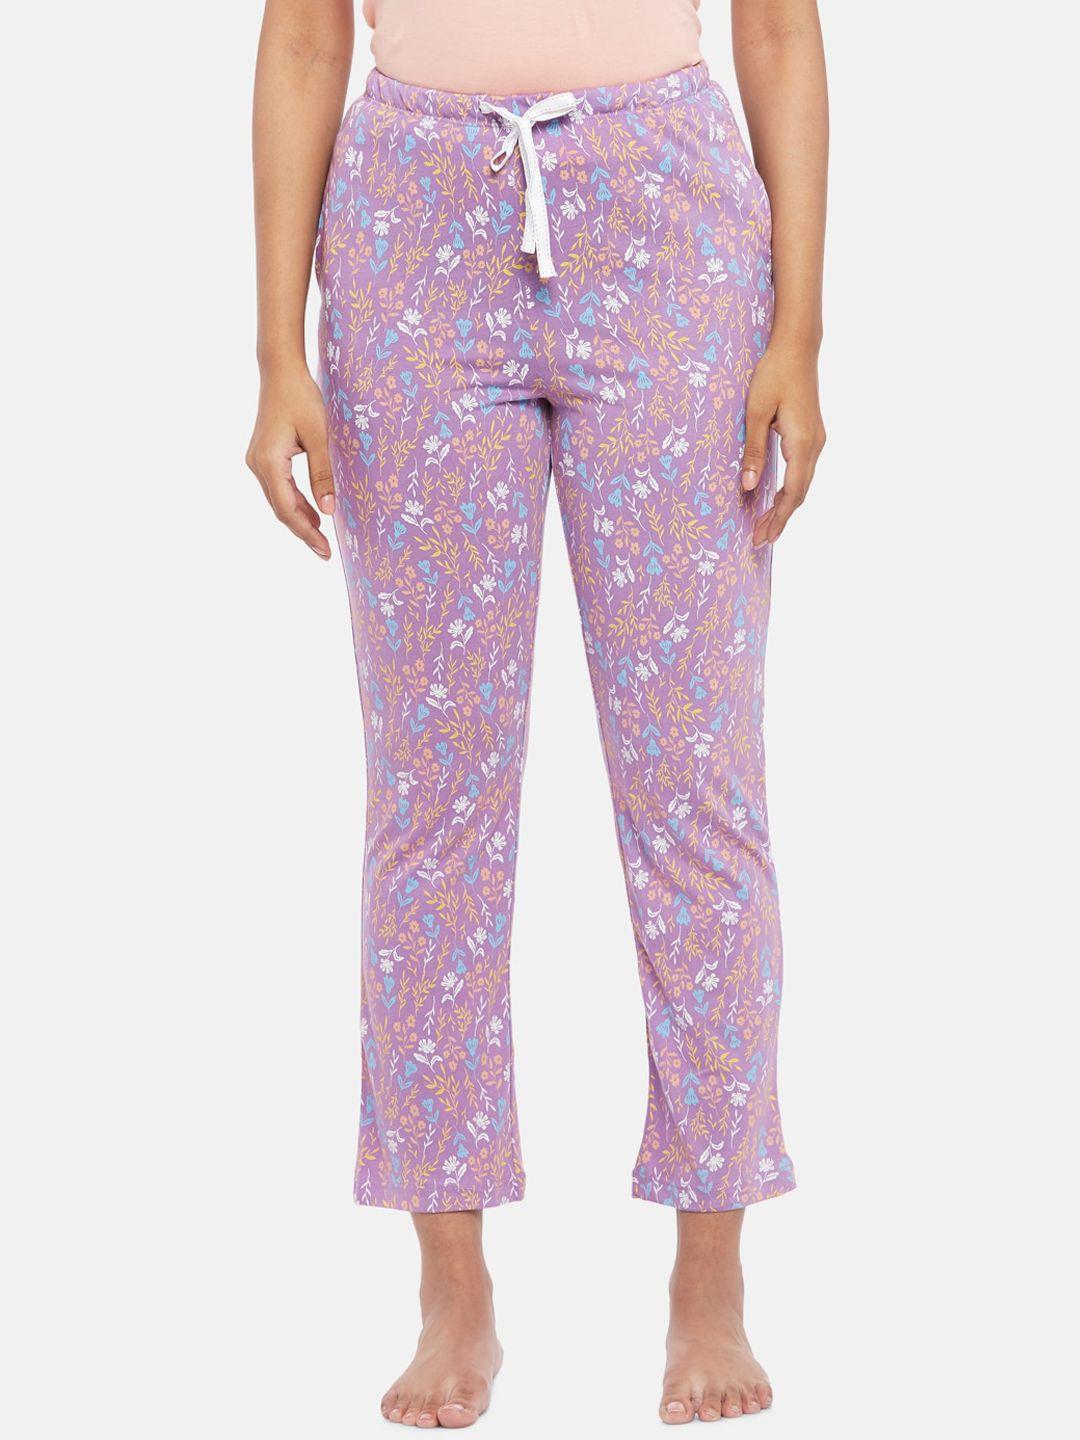 dreamz by pantaloons lavender pure cotton floral print lounge pants